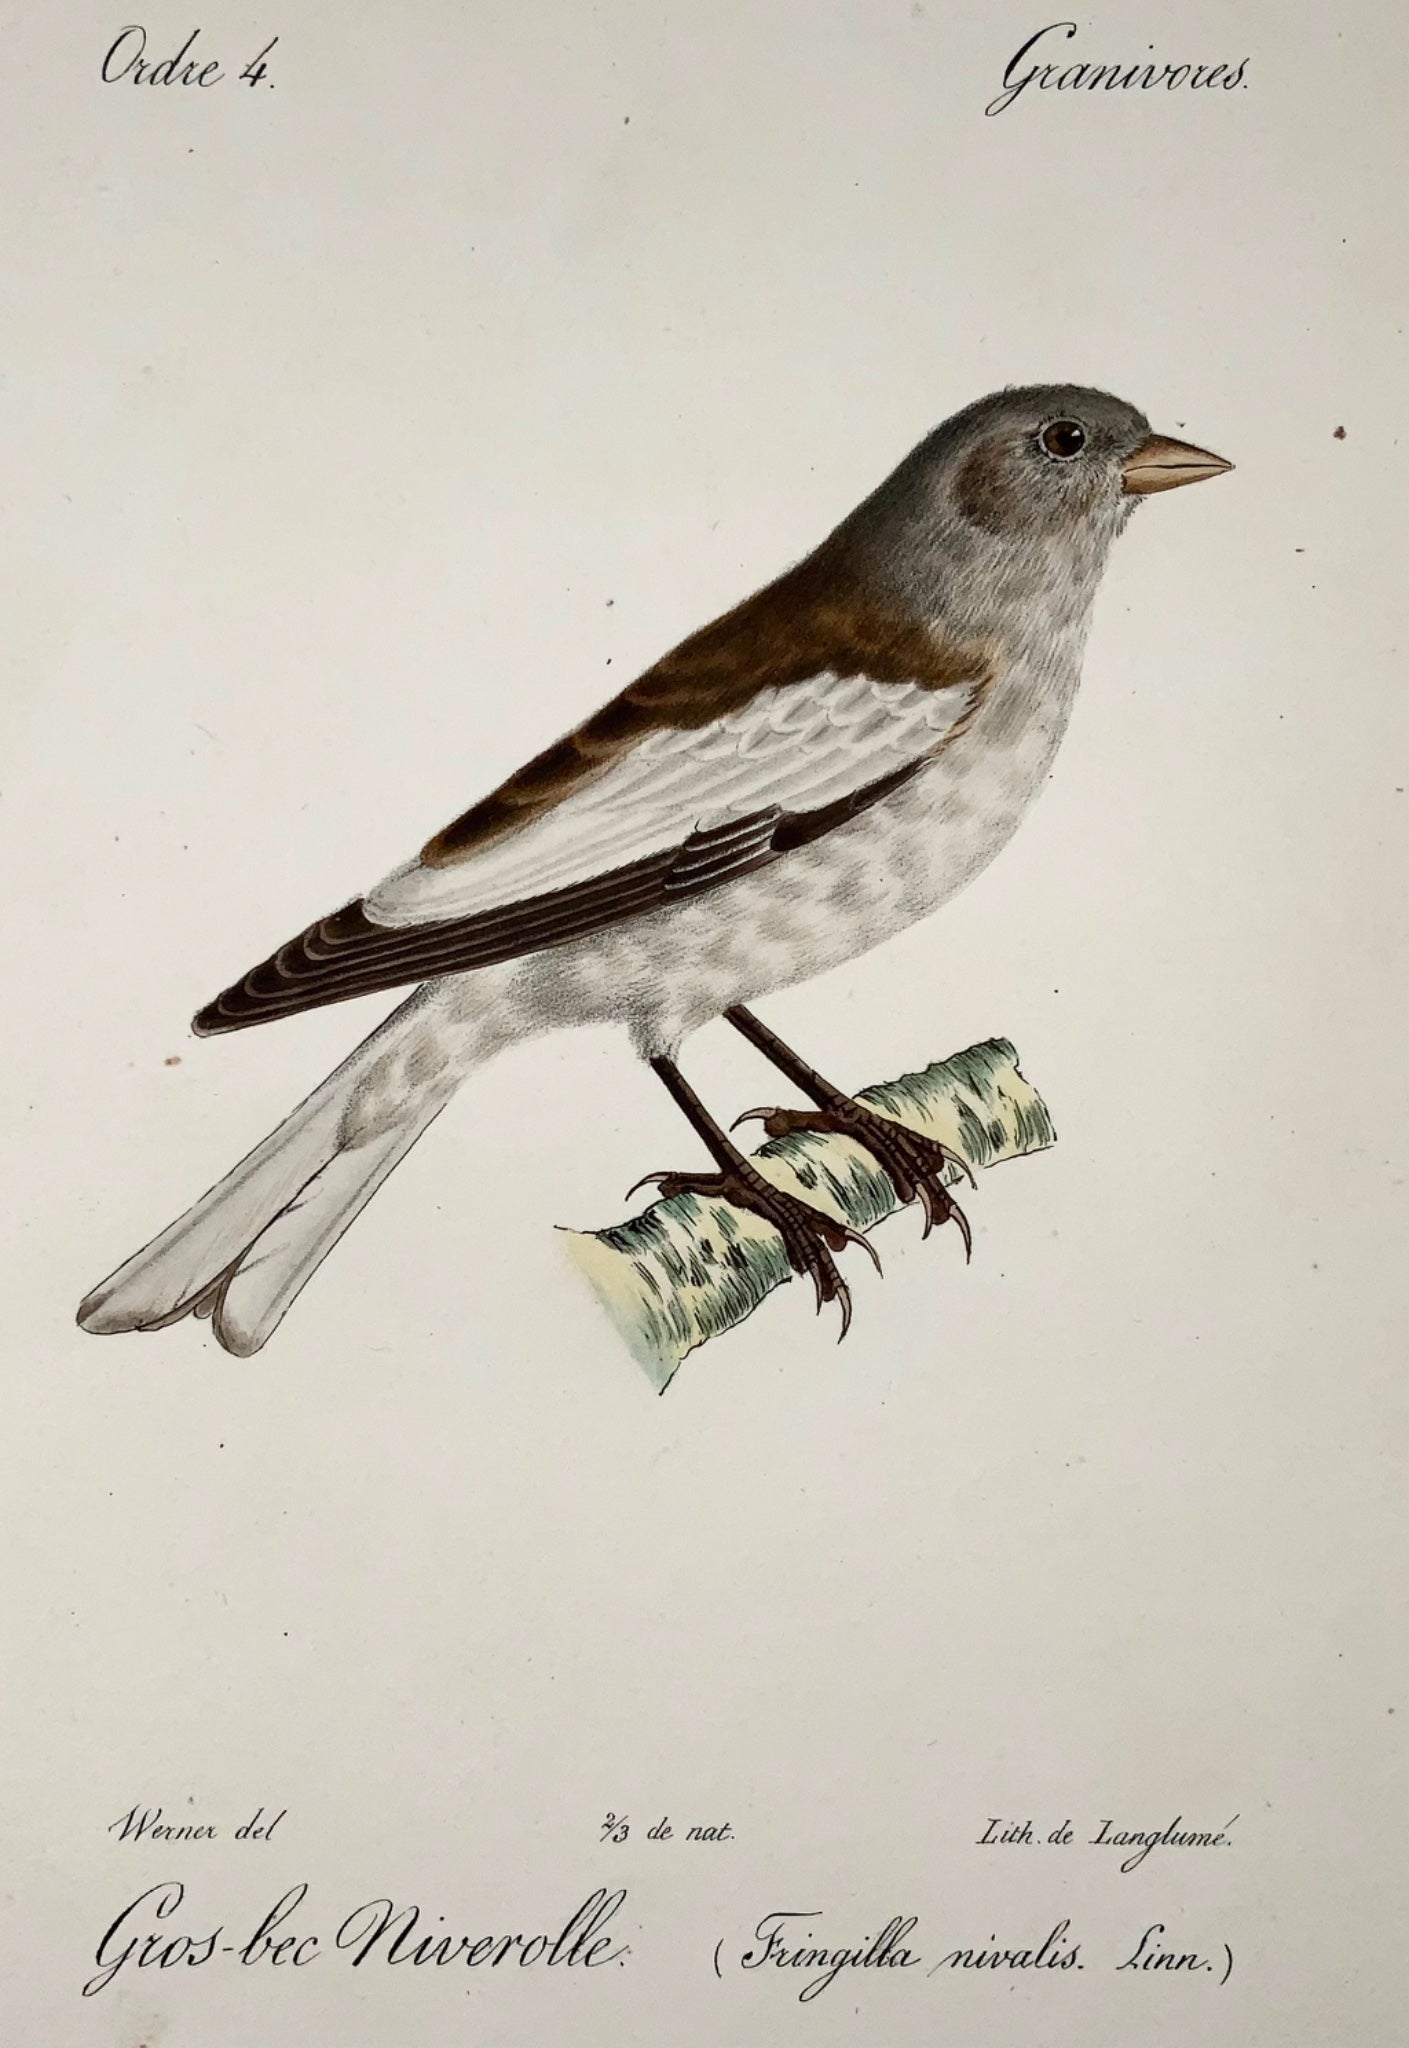 1820 Snow Finch, d'après Werner de Langume, lithographie sur pierre, oiseaux. couleur de la main